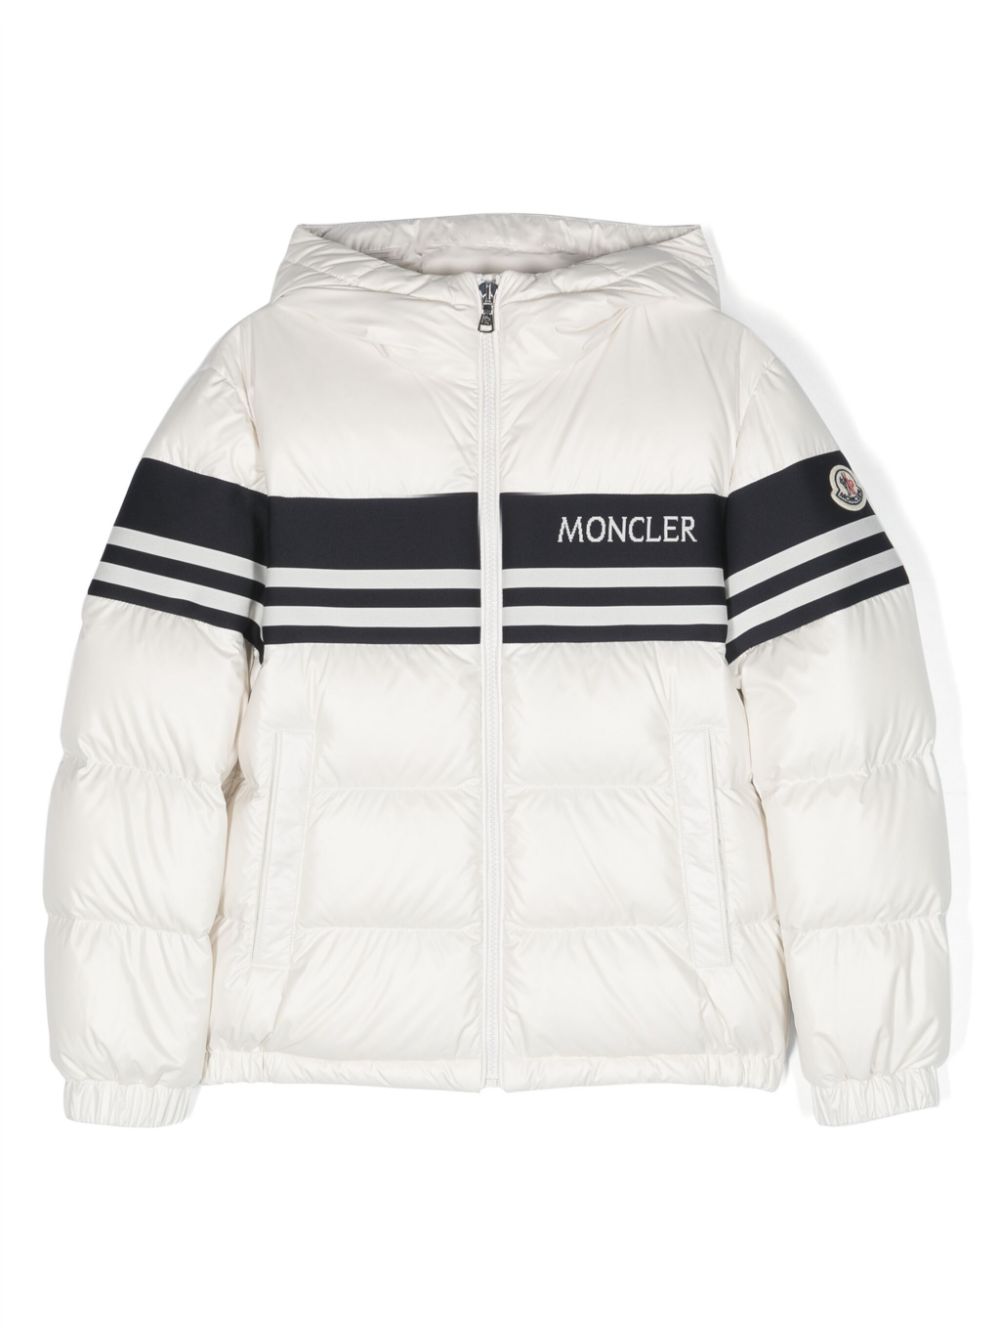 Moncler kids hooded jacket